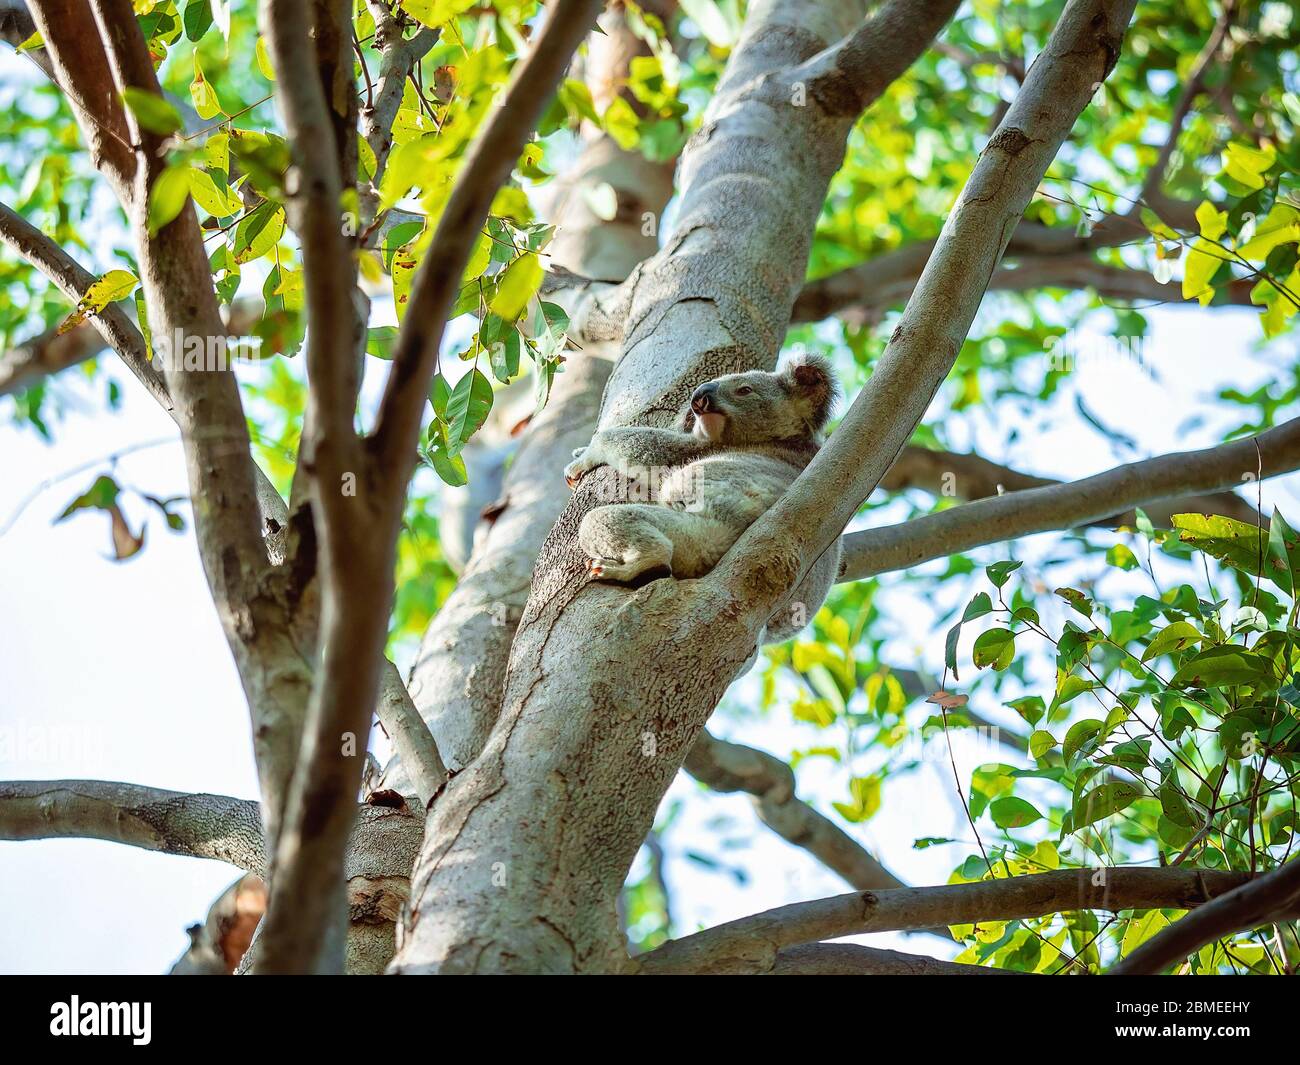 Un koala australien assis sur la branche d'un arbre dans son environnement indigène, la forêt d'eucalyptus Banque D'Images